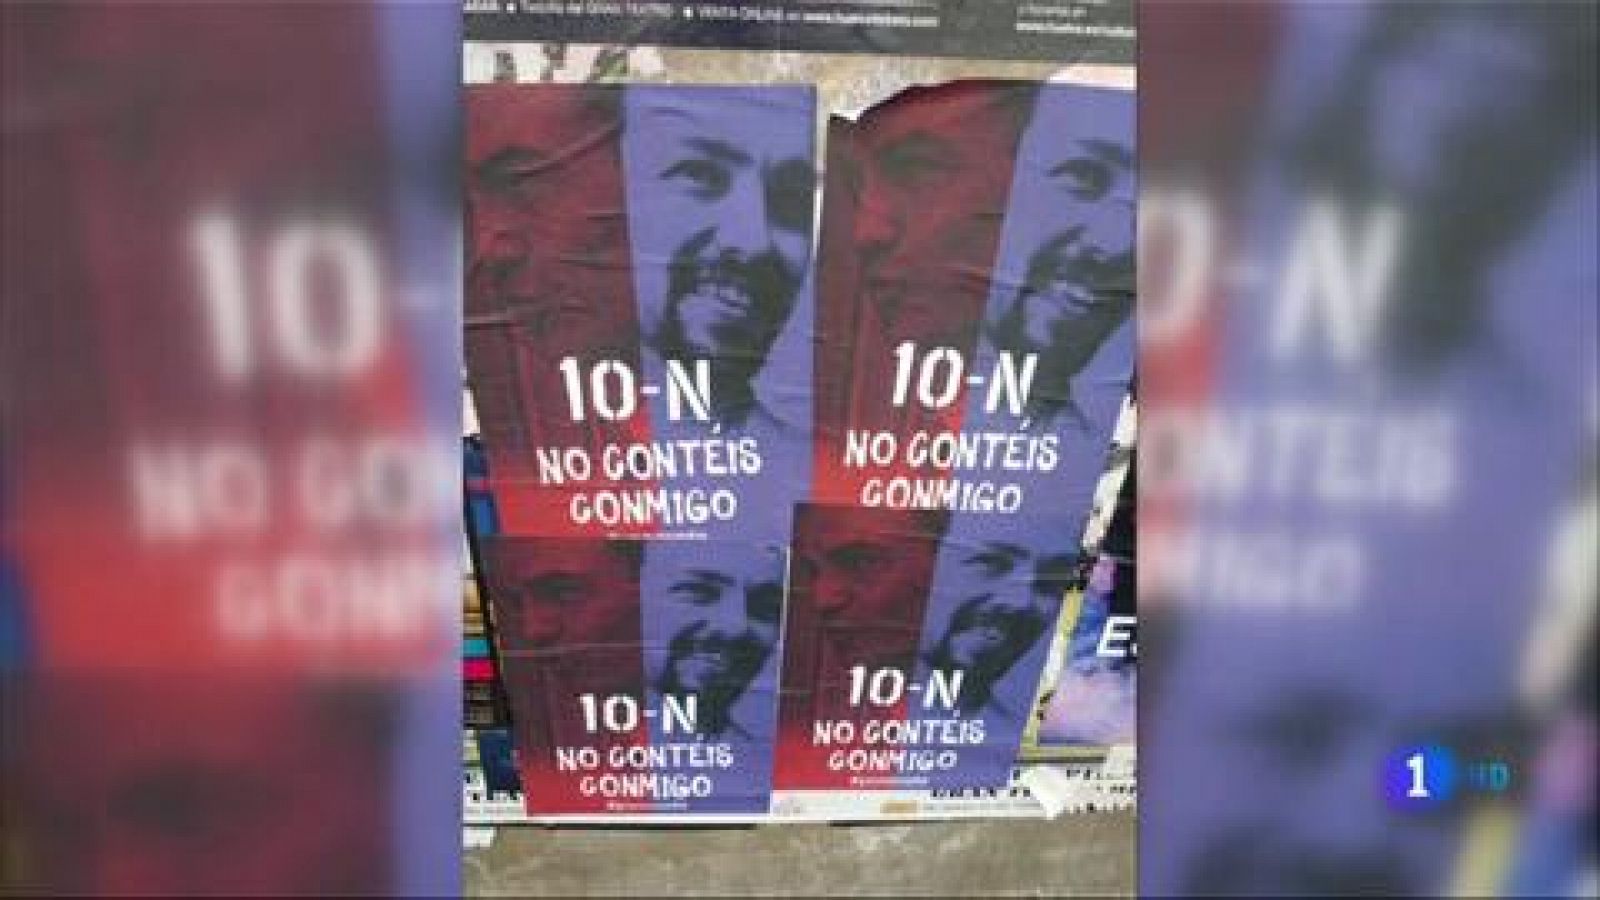 Elecciones 10N: Errejón denuncia ante la Junta Electoral la campaña "Yo no voto" para desmovilizar a la izquierda 